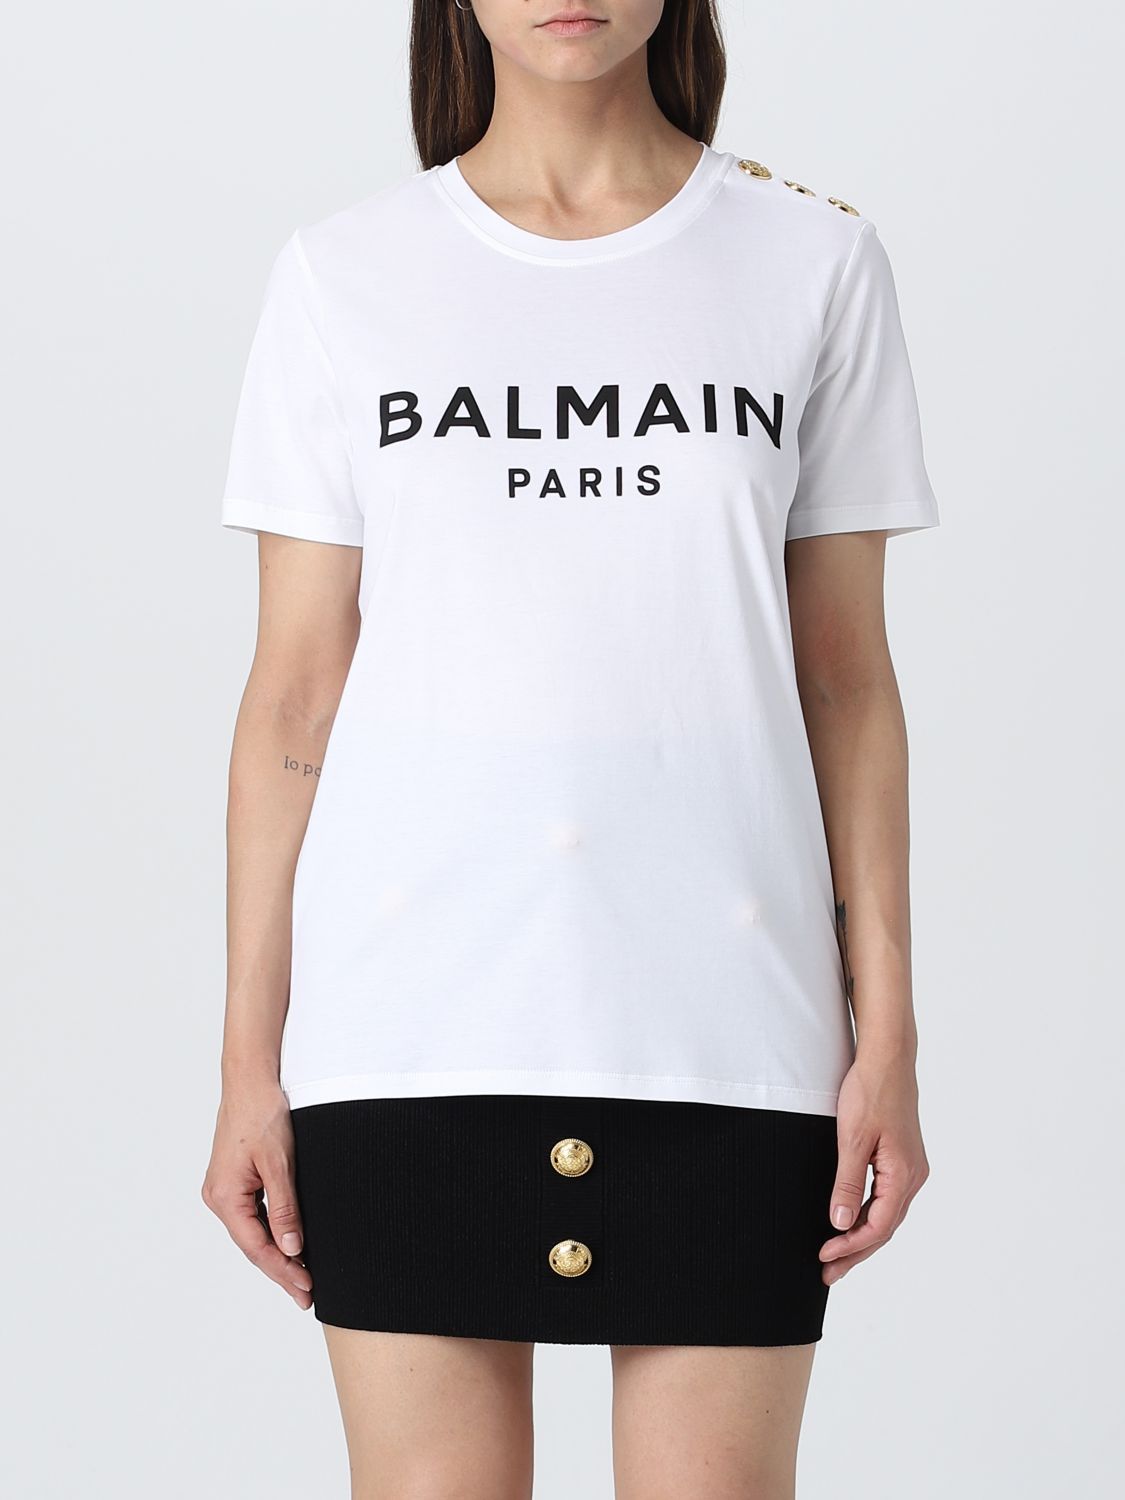 BALMAIN T恤 BALMAIN 女士 颜色 白色,391141001